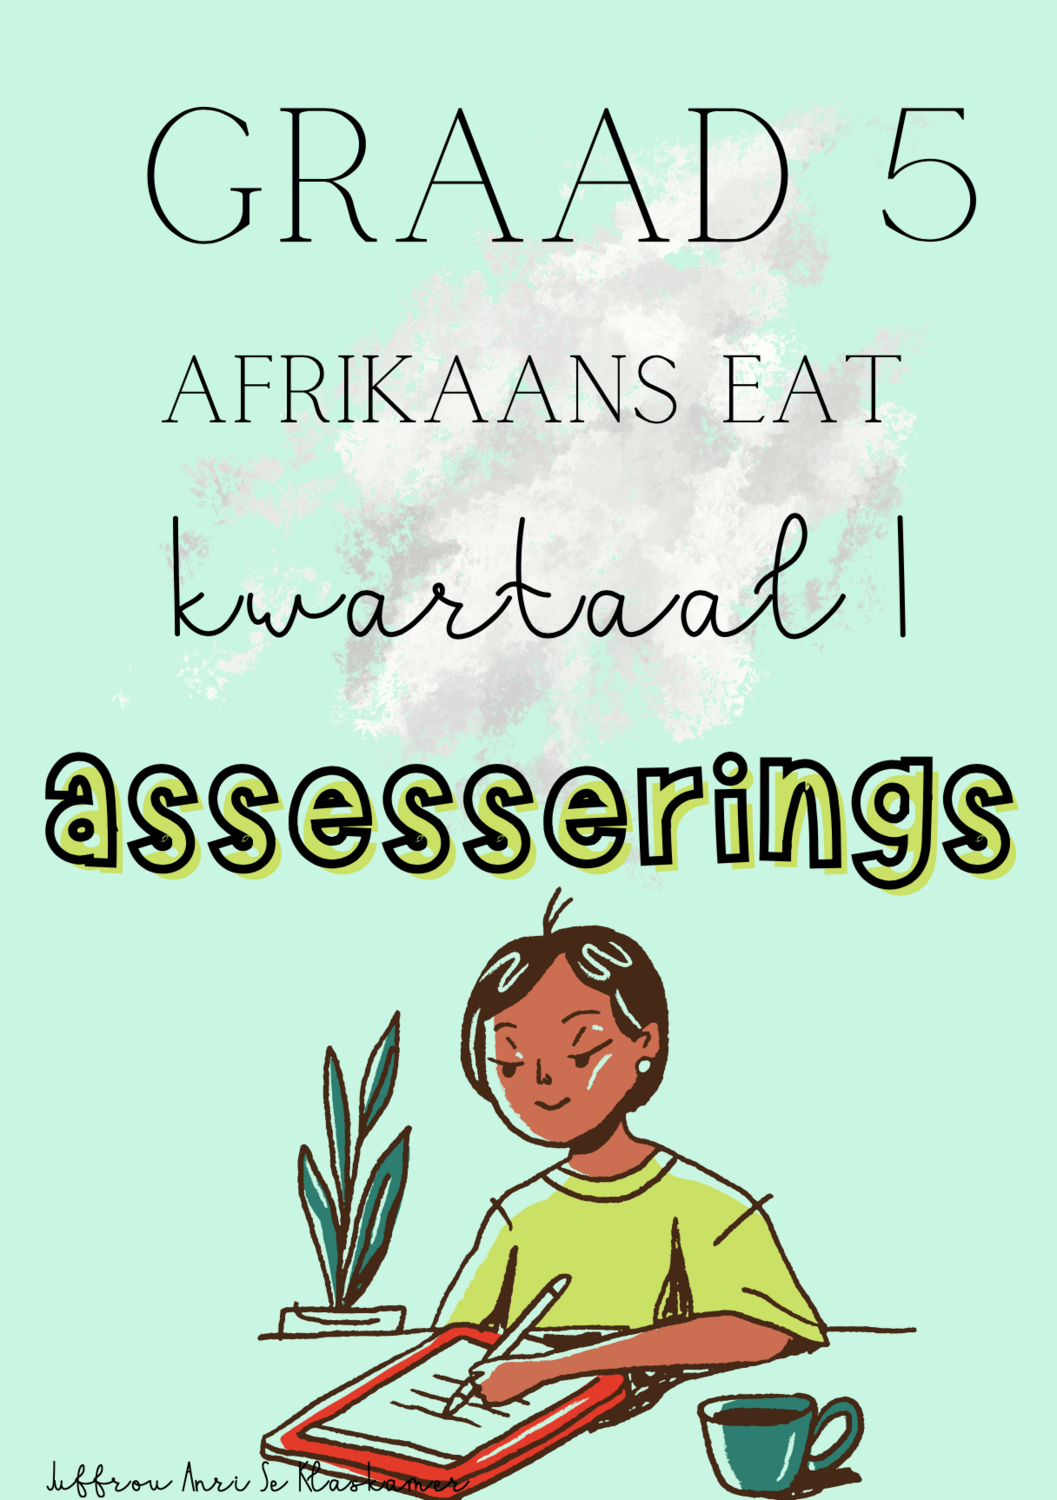 Graad 5 Afrikaans EAT kwartaal 1 assesserings volume 2 (2023/2024)